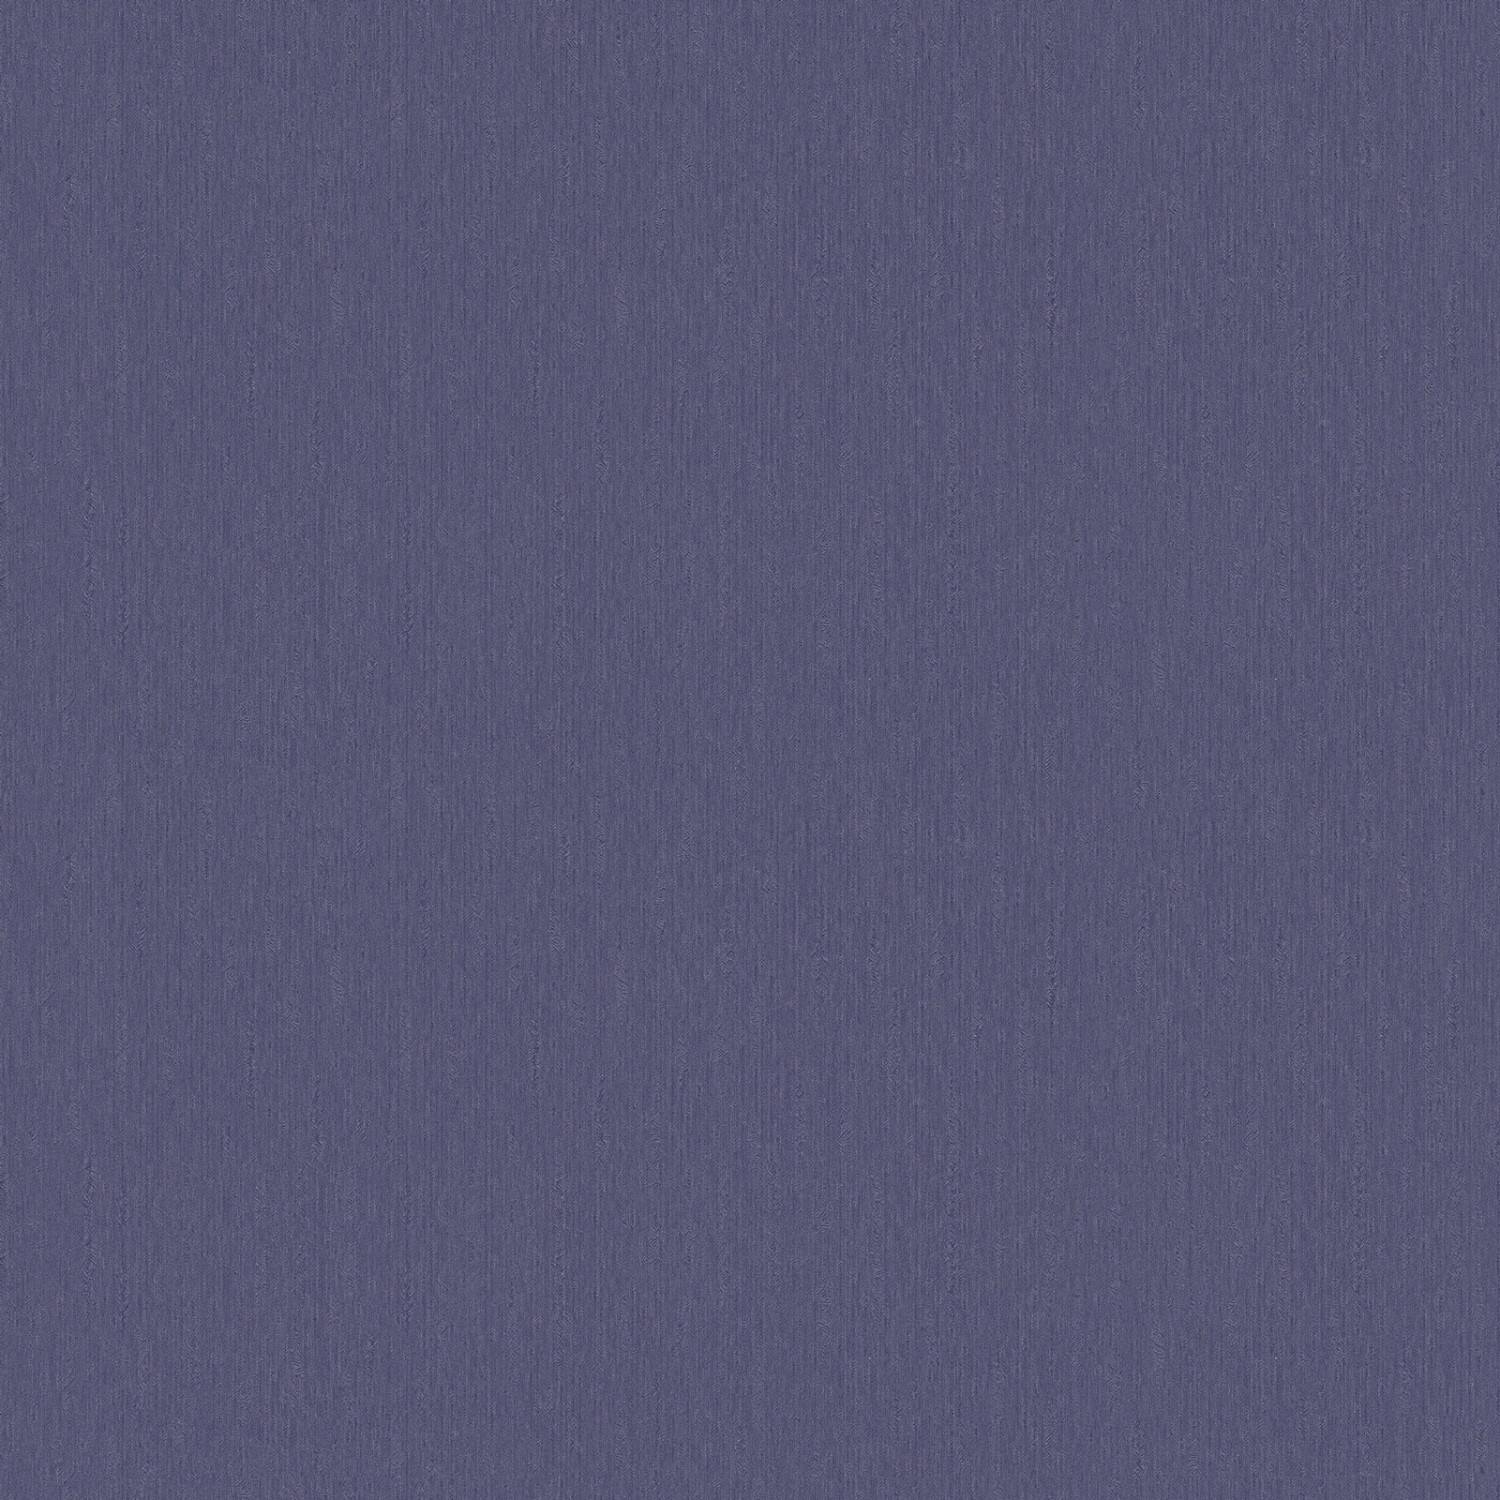 Bricoflor Einfarbige Tapete in Blau Violett Uni Vliestapete in Dunkelblau Lila Ideal für Schlaf und Esszimmer Vlies Wand